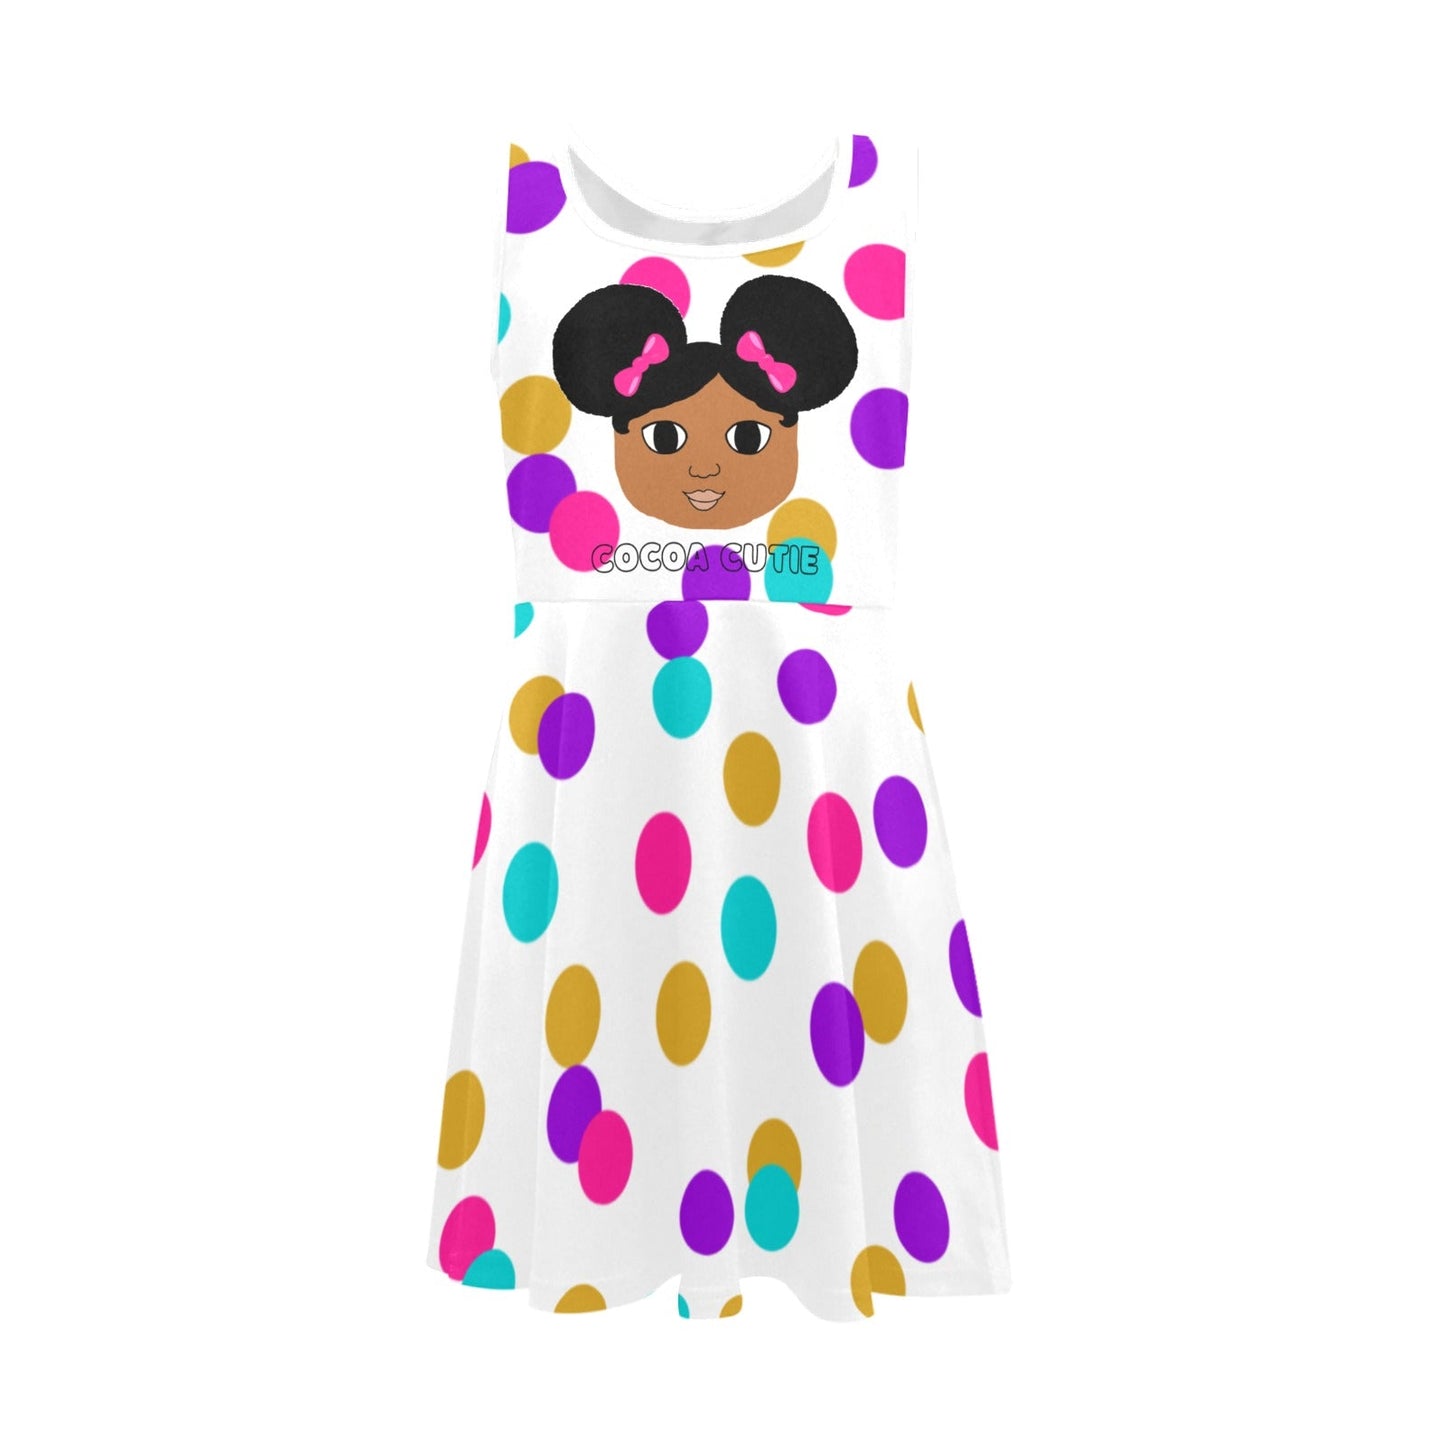 I AM Cocoa Cutie Kid's Sleeveless Dress (Three Skin Tones) -POLKA DOTS